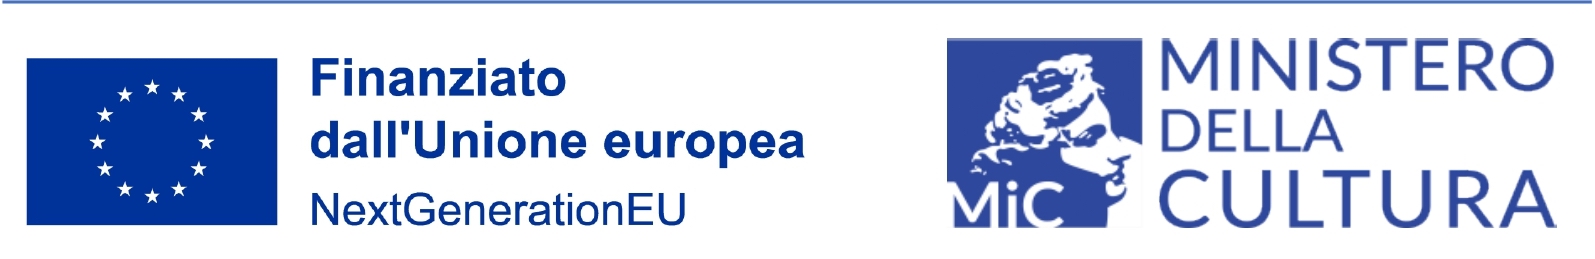 Finanziato dall'Unione Europe, logo Ministero della Cultura